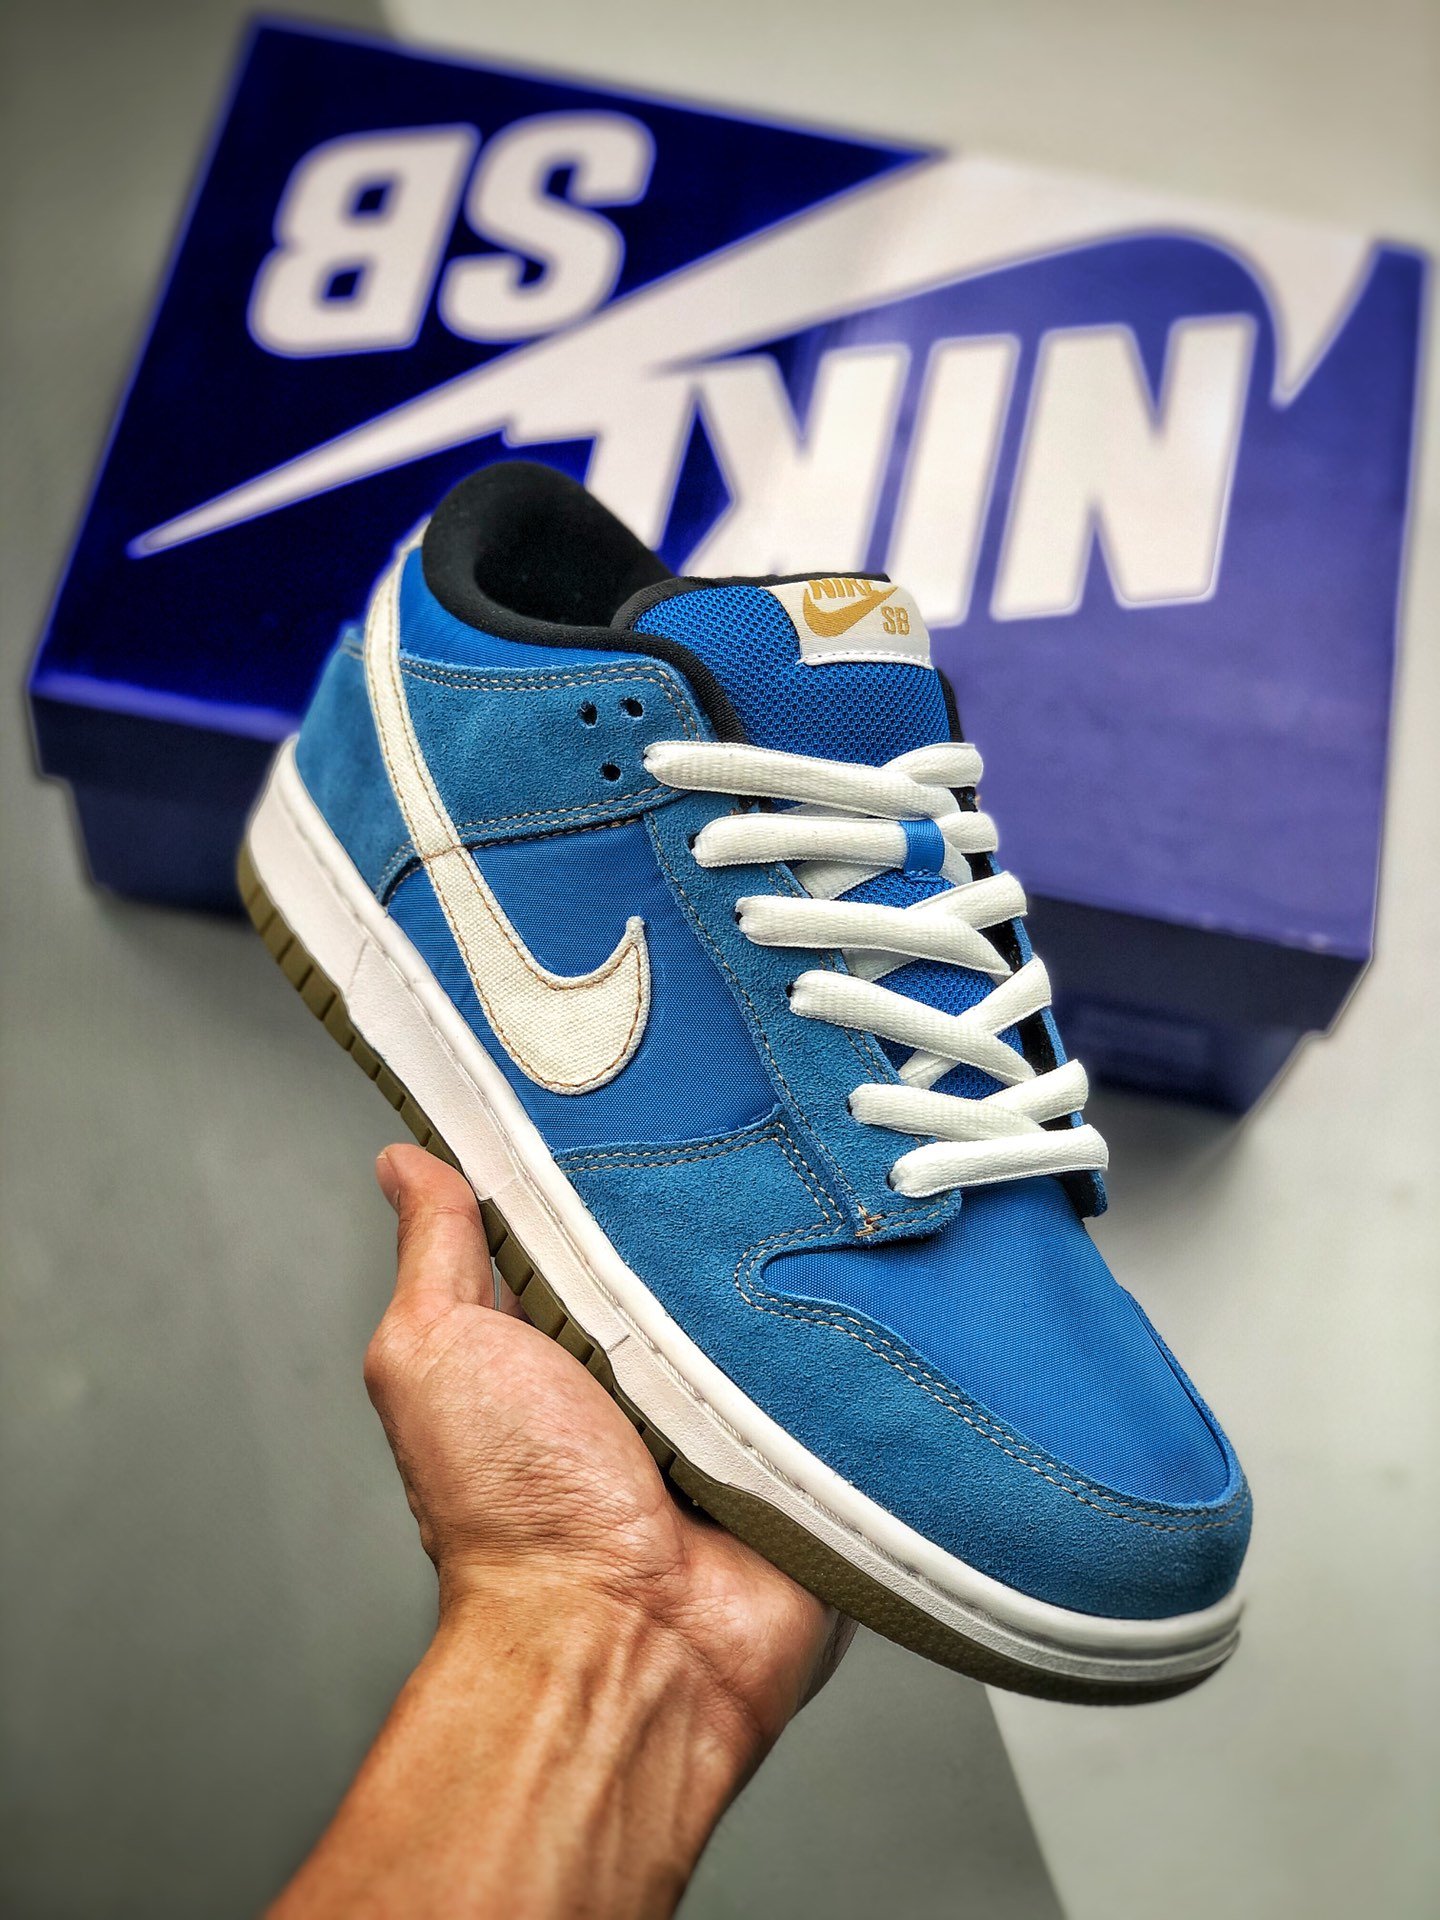 Nike SB Dunk Low "Chun Li" Argon Blue/White Shoes